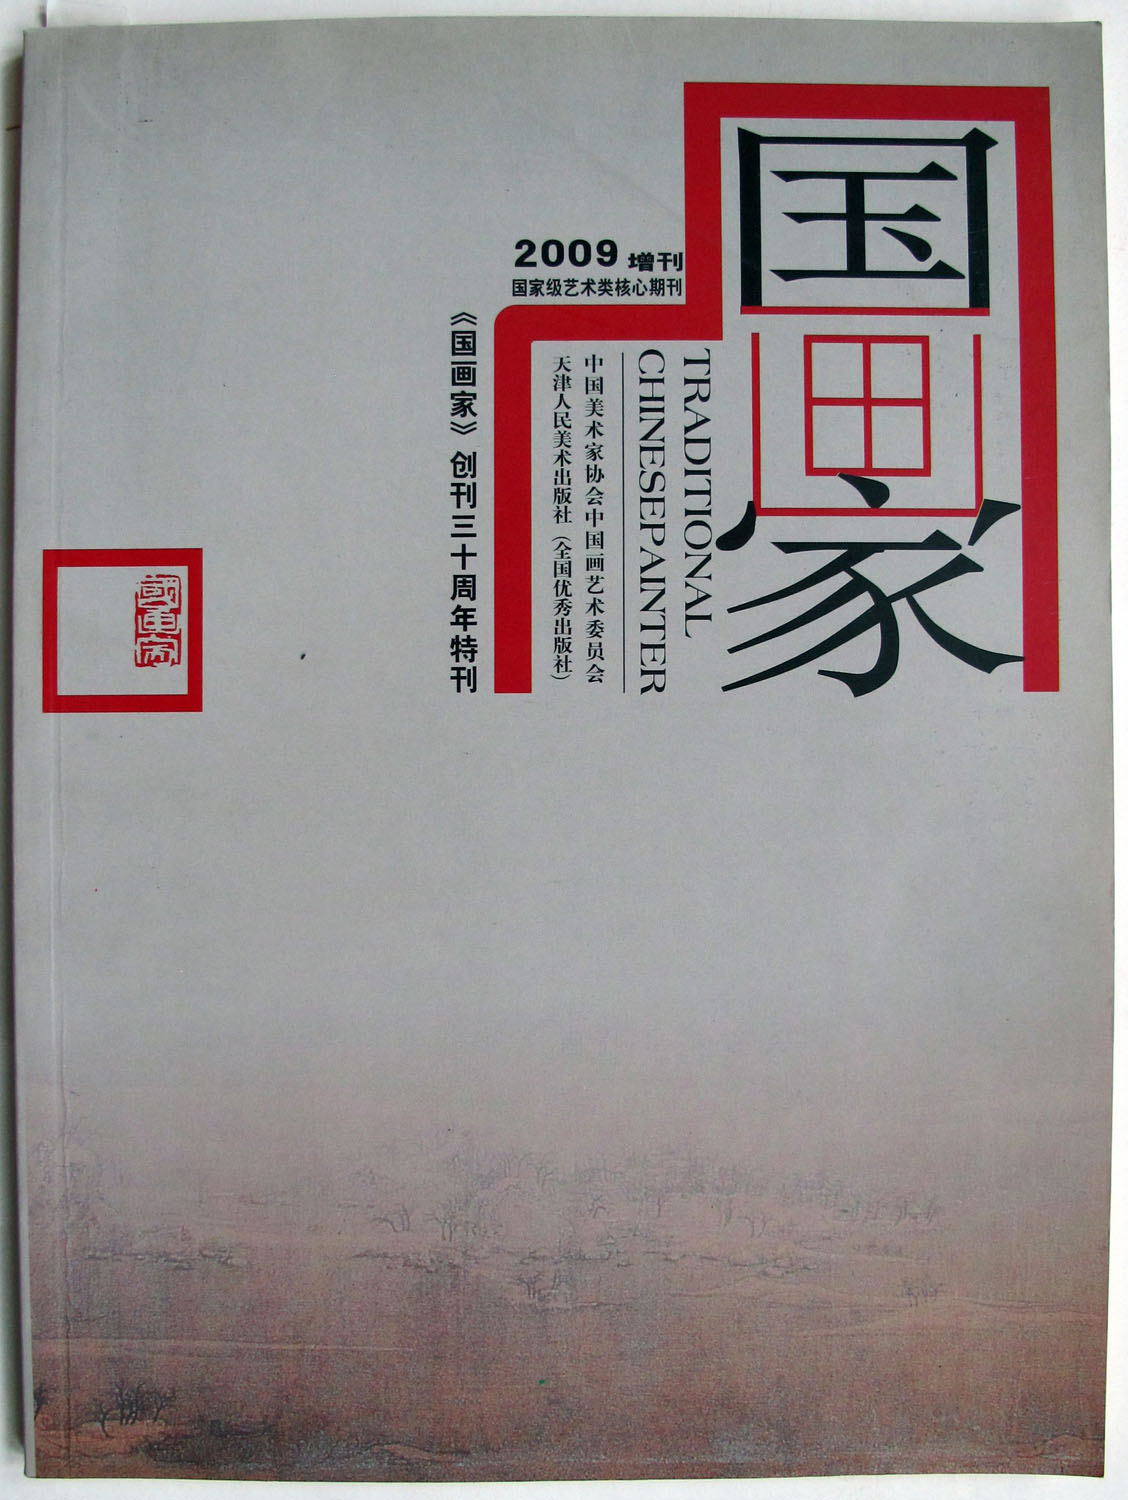 2009年国画家创刊三十周年特刊